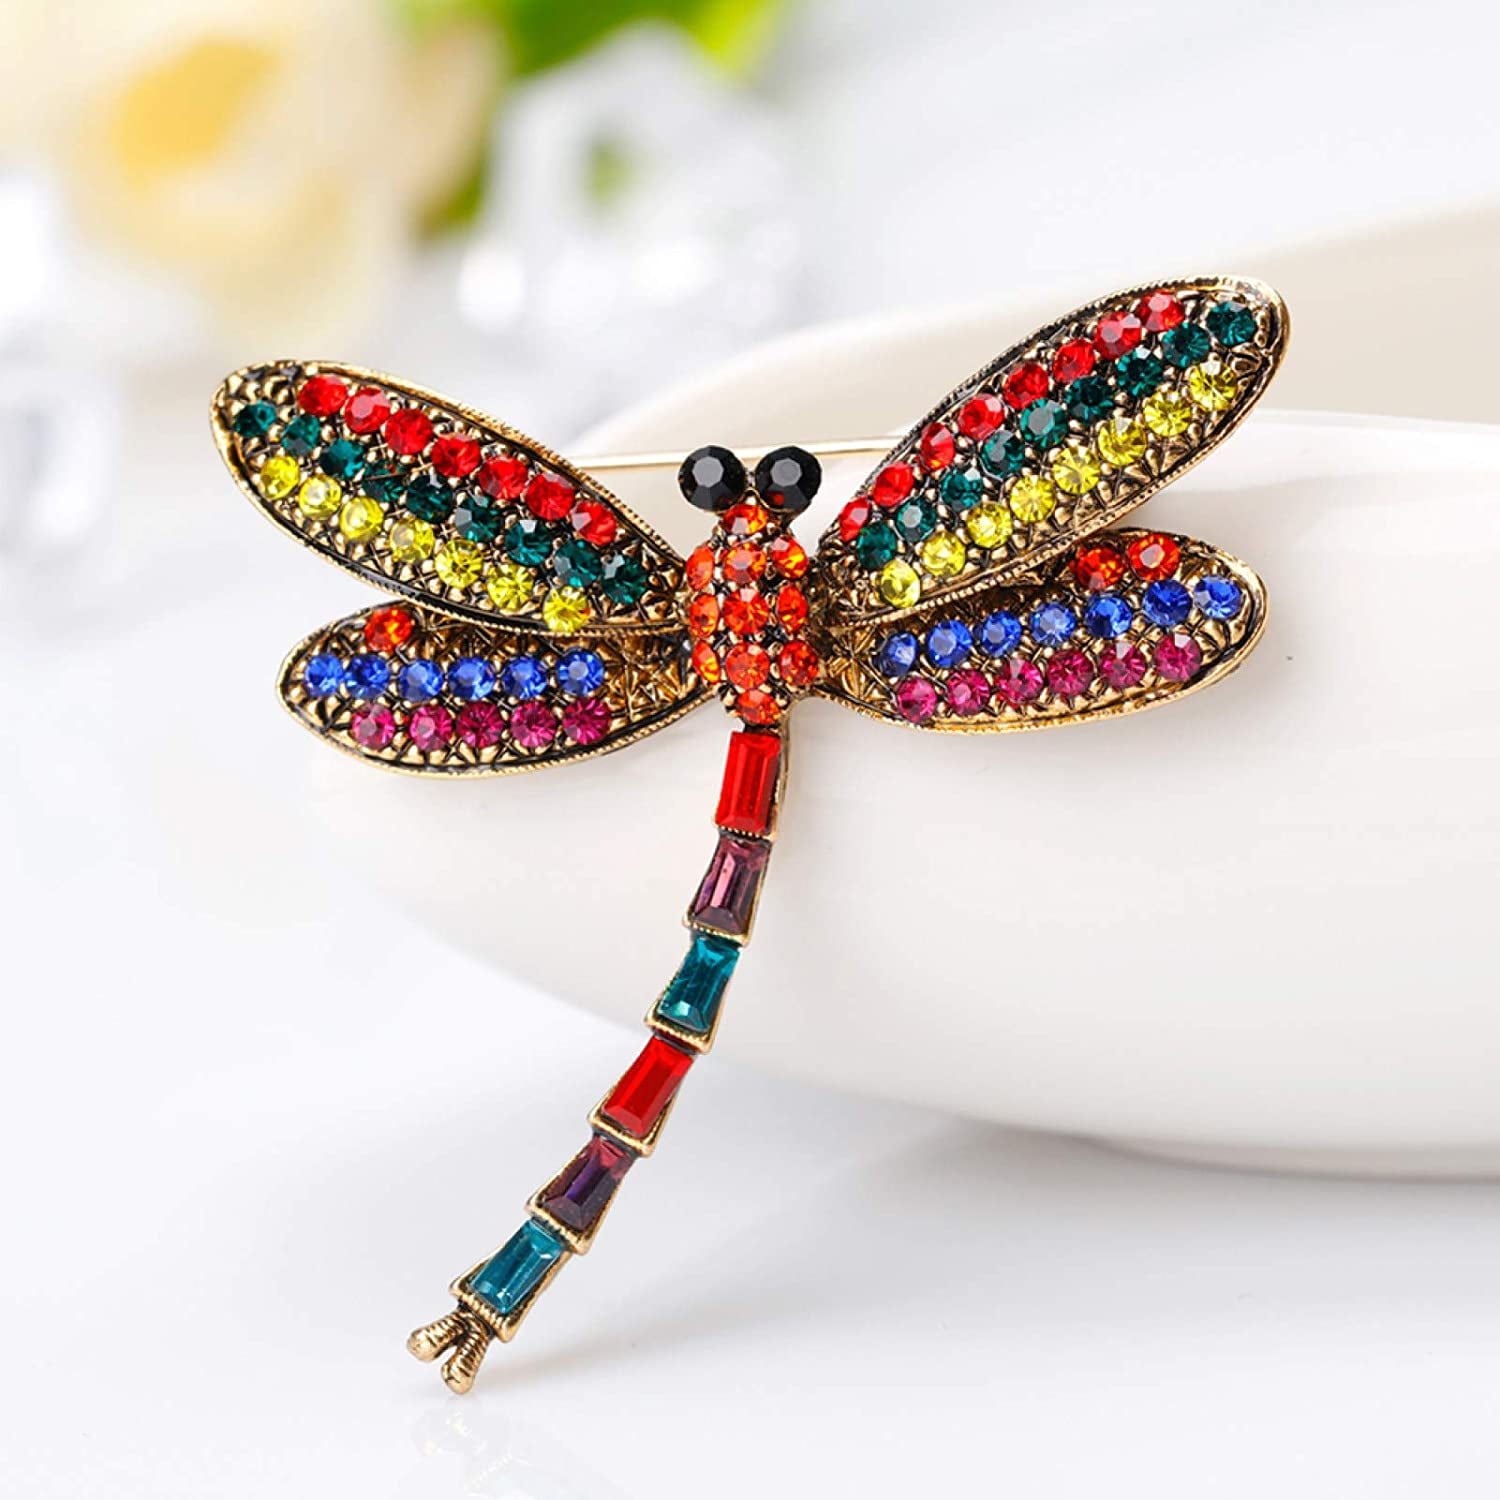 Dragonfly brooch black cream enamel rhinestone vintage style in gift box 